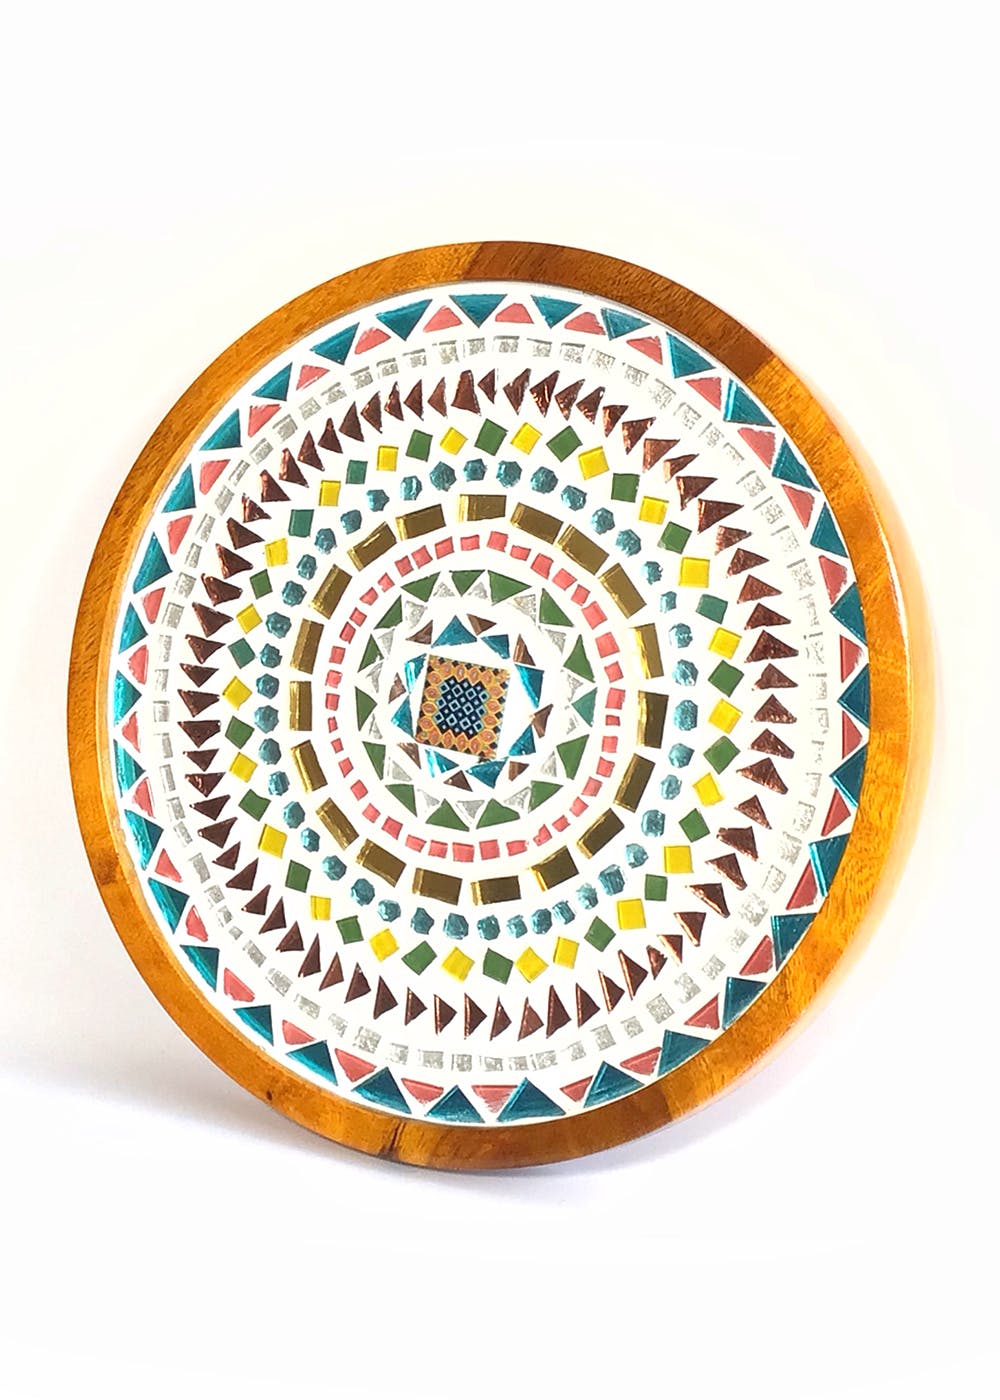 Get Colourful Mandala Mosaic Wall Plate at ₹ 1899 | LBB Shop